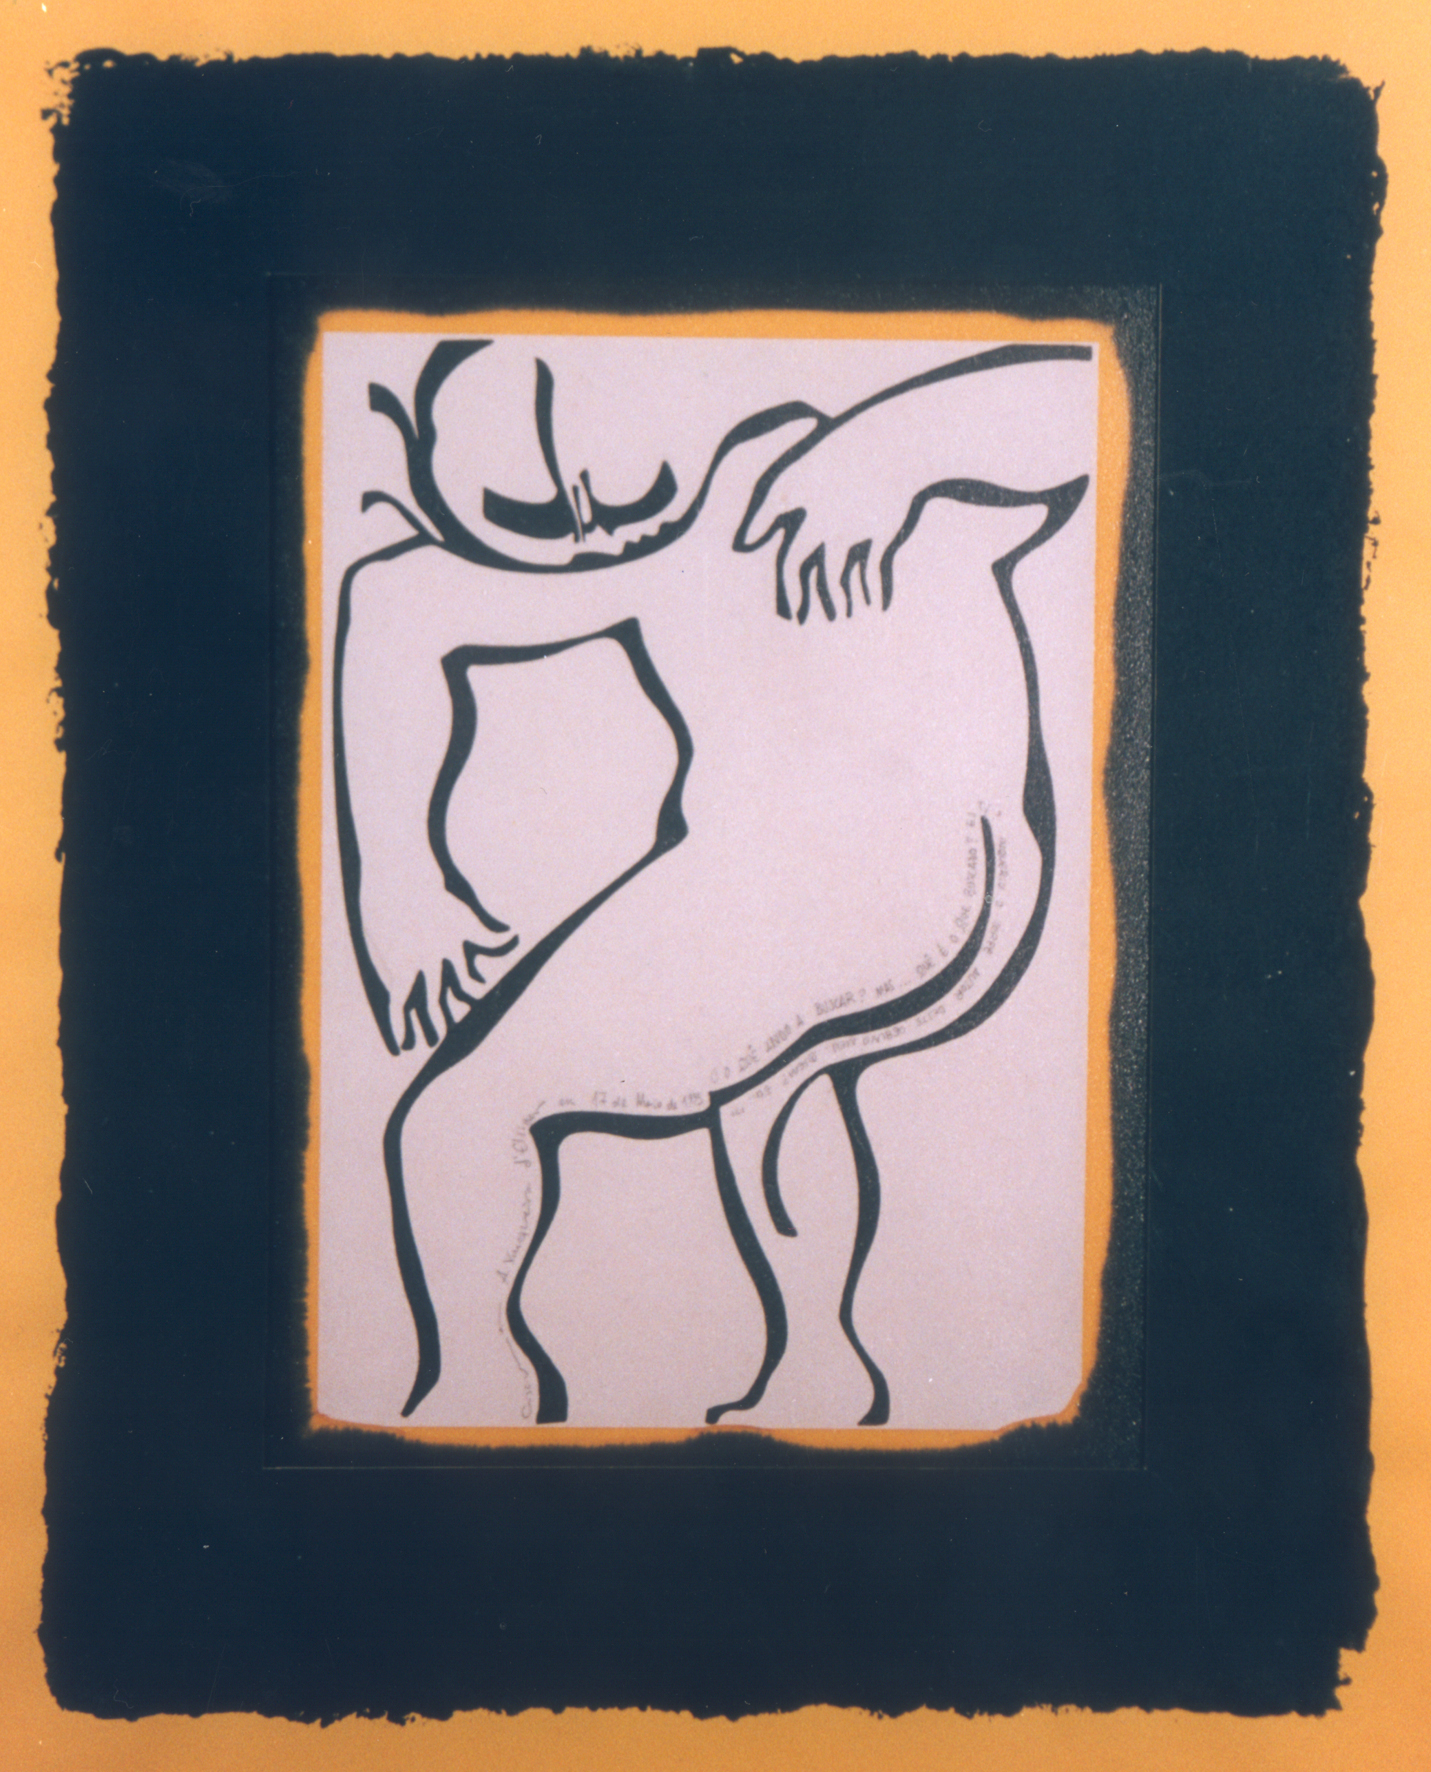 Ladislau da Regueira | Debuxar não é pintar | Auto-Retrato Número Quinze (1995)